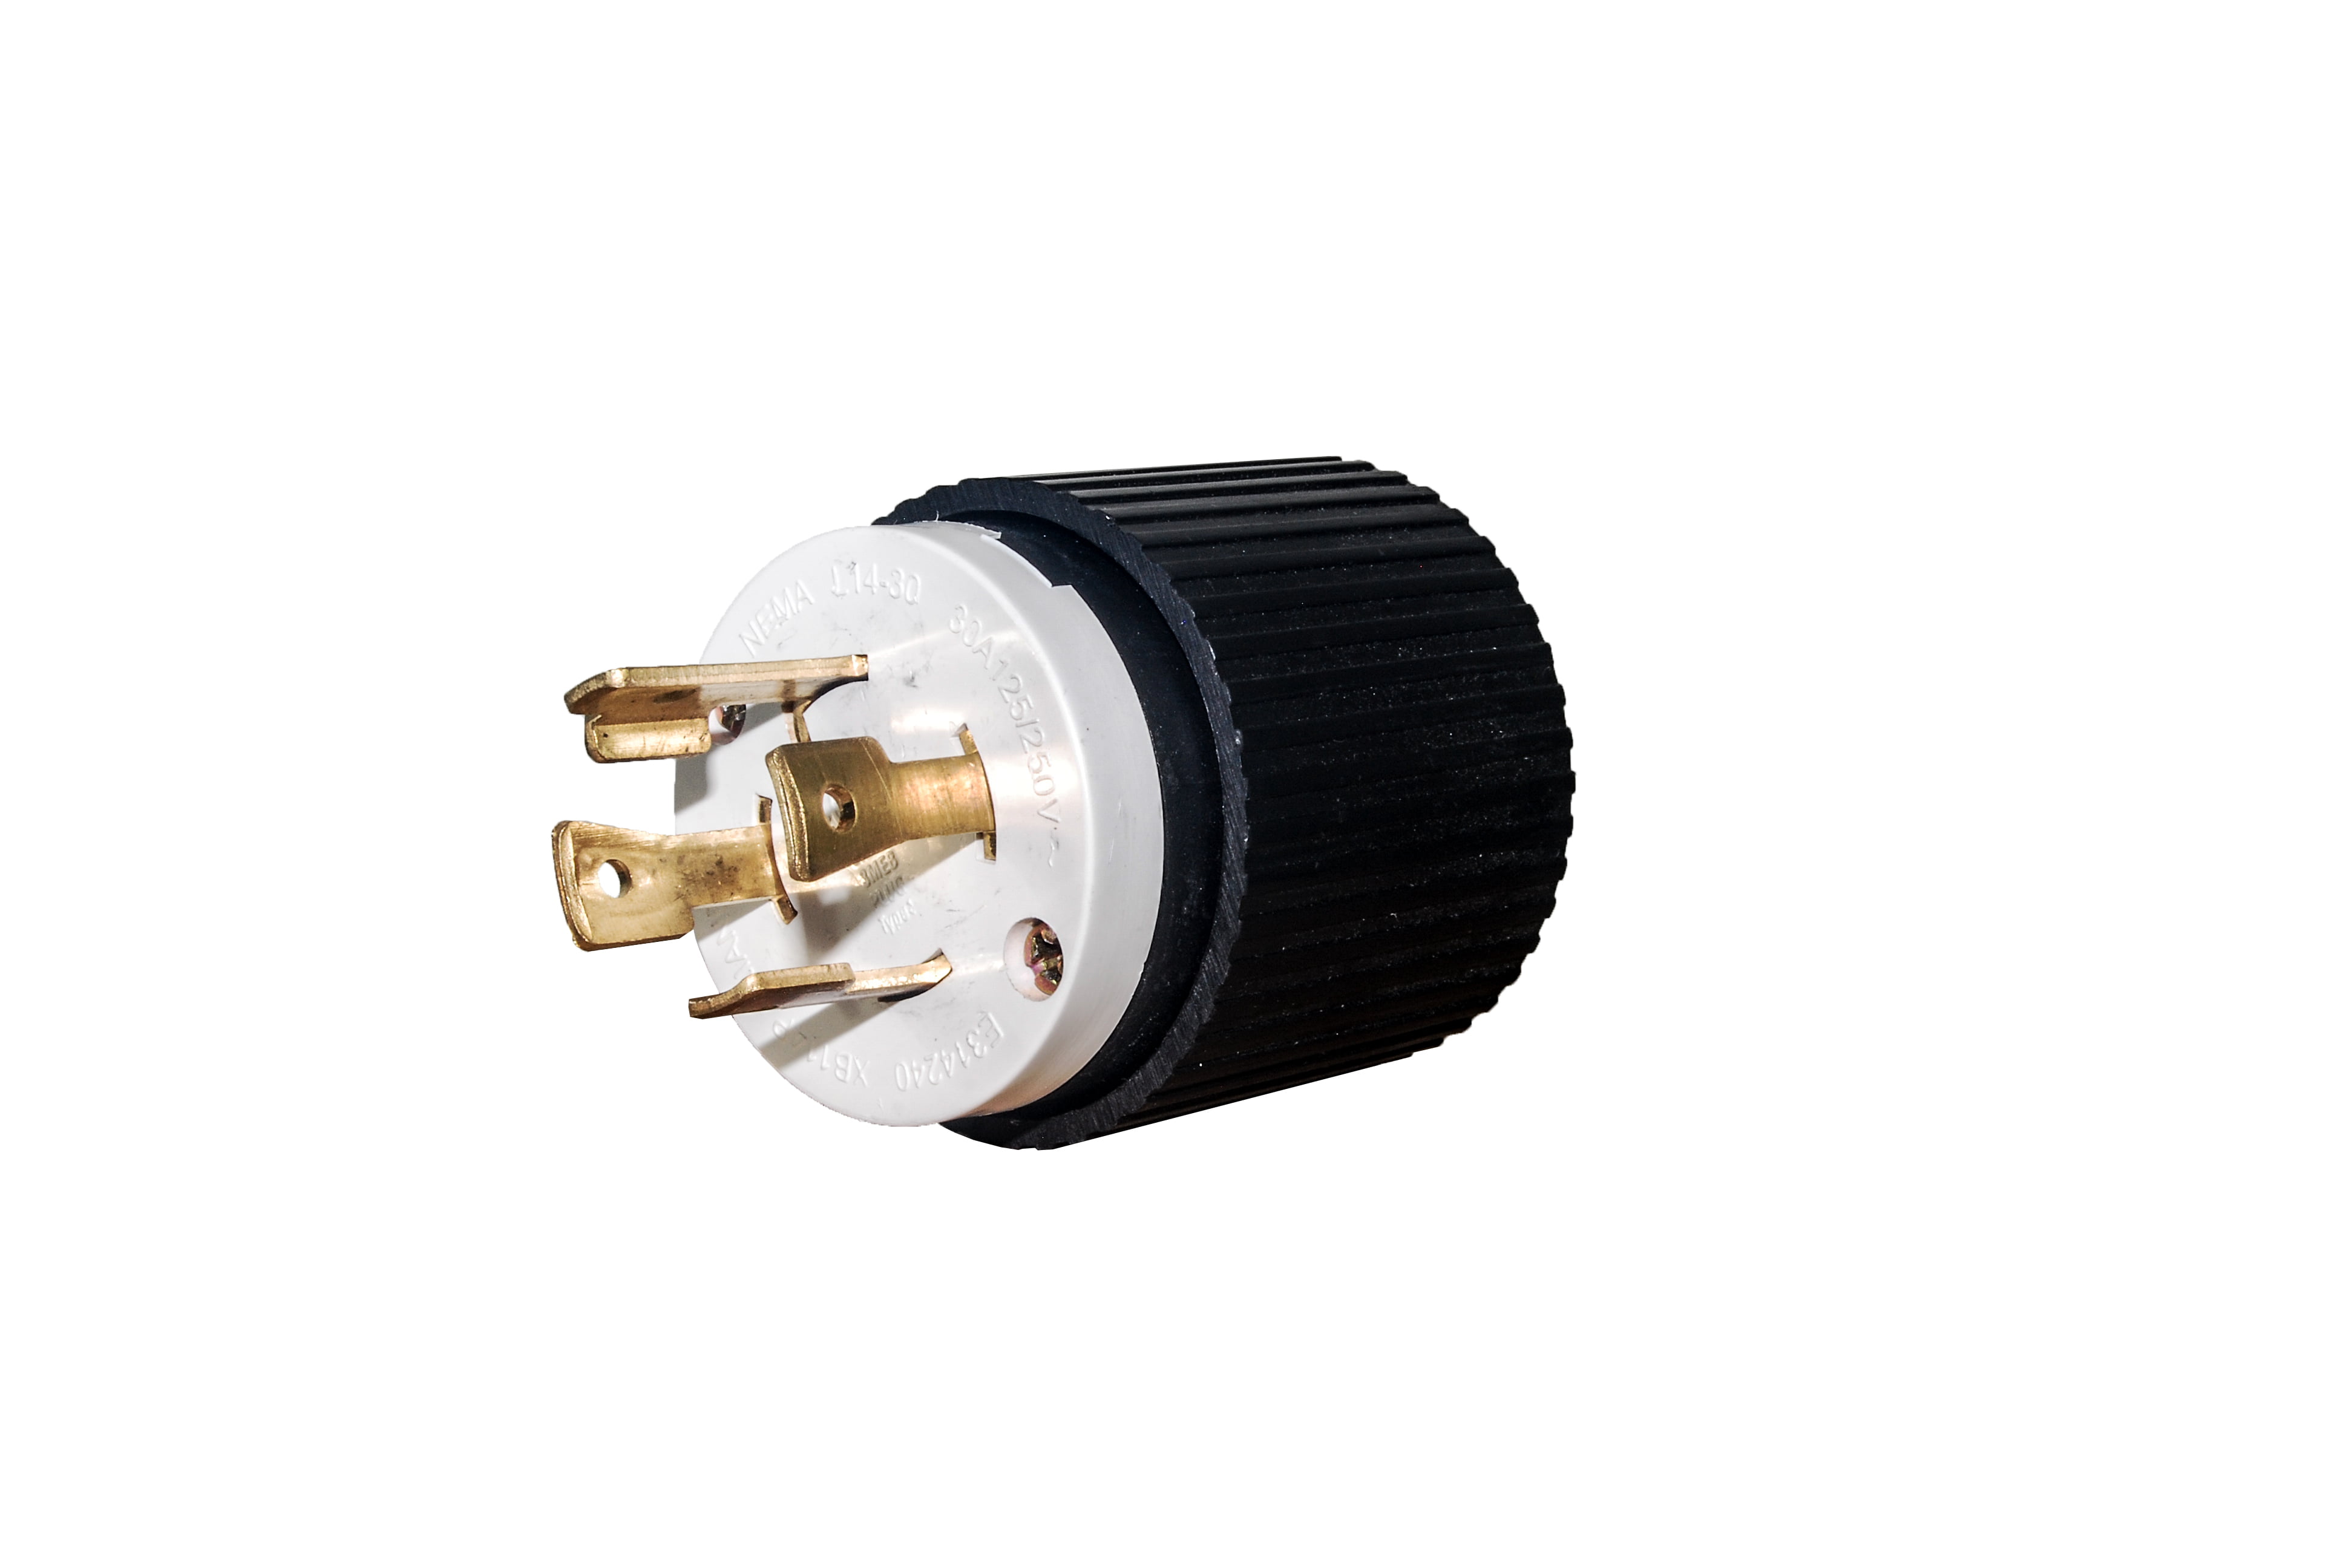 Twist Lock Electrical Plug Female L14-30R 4 Wire Generator Receptacle 125/250V 